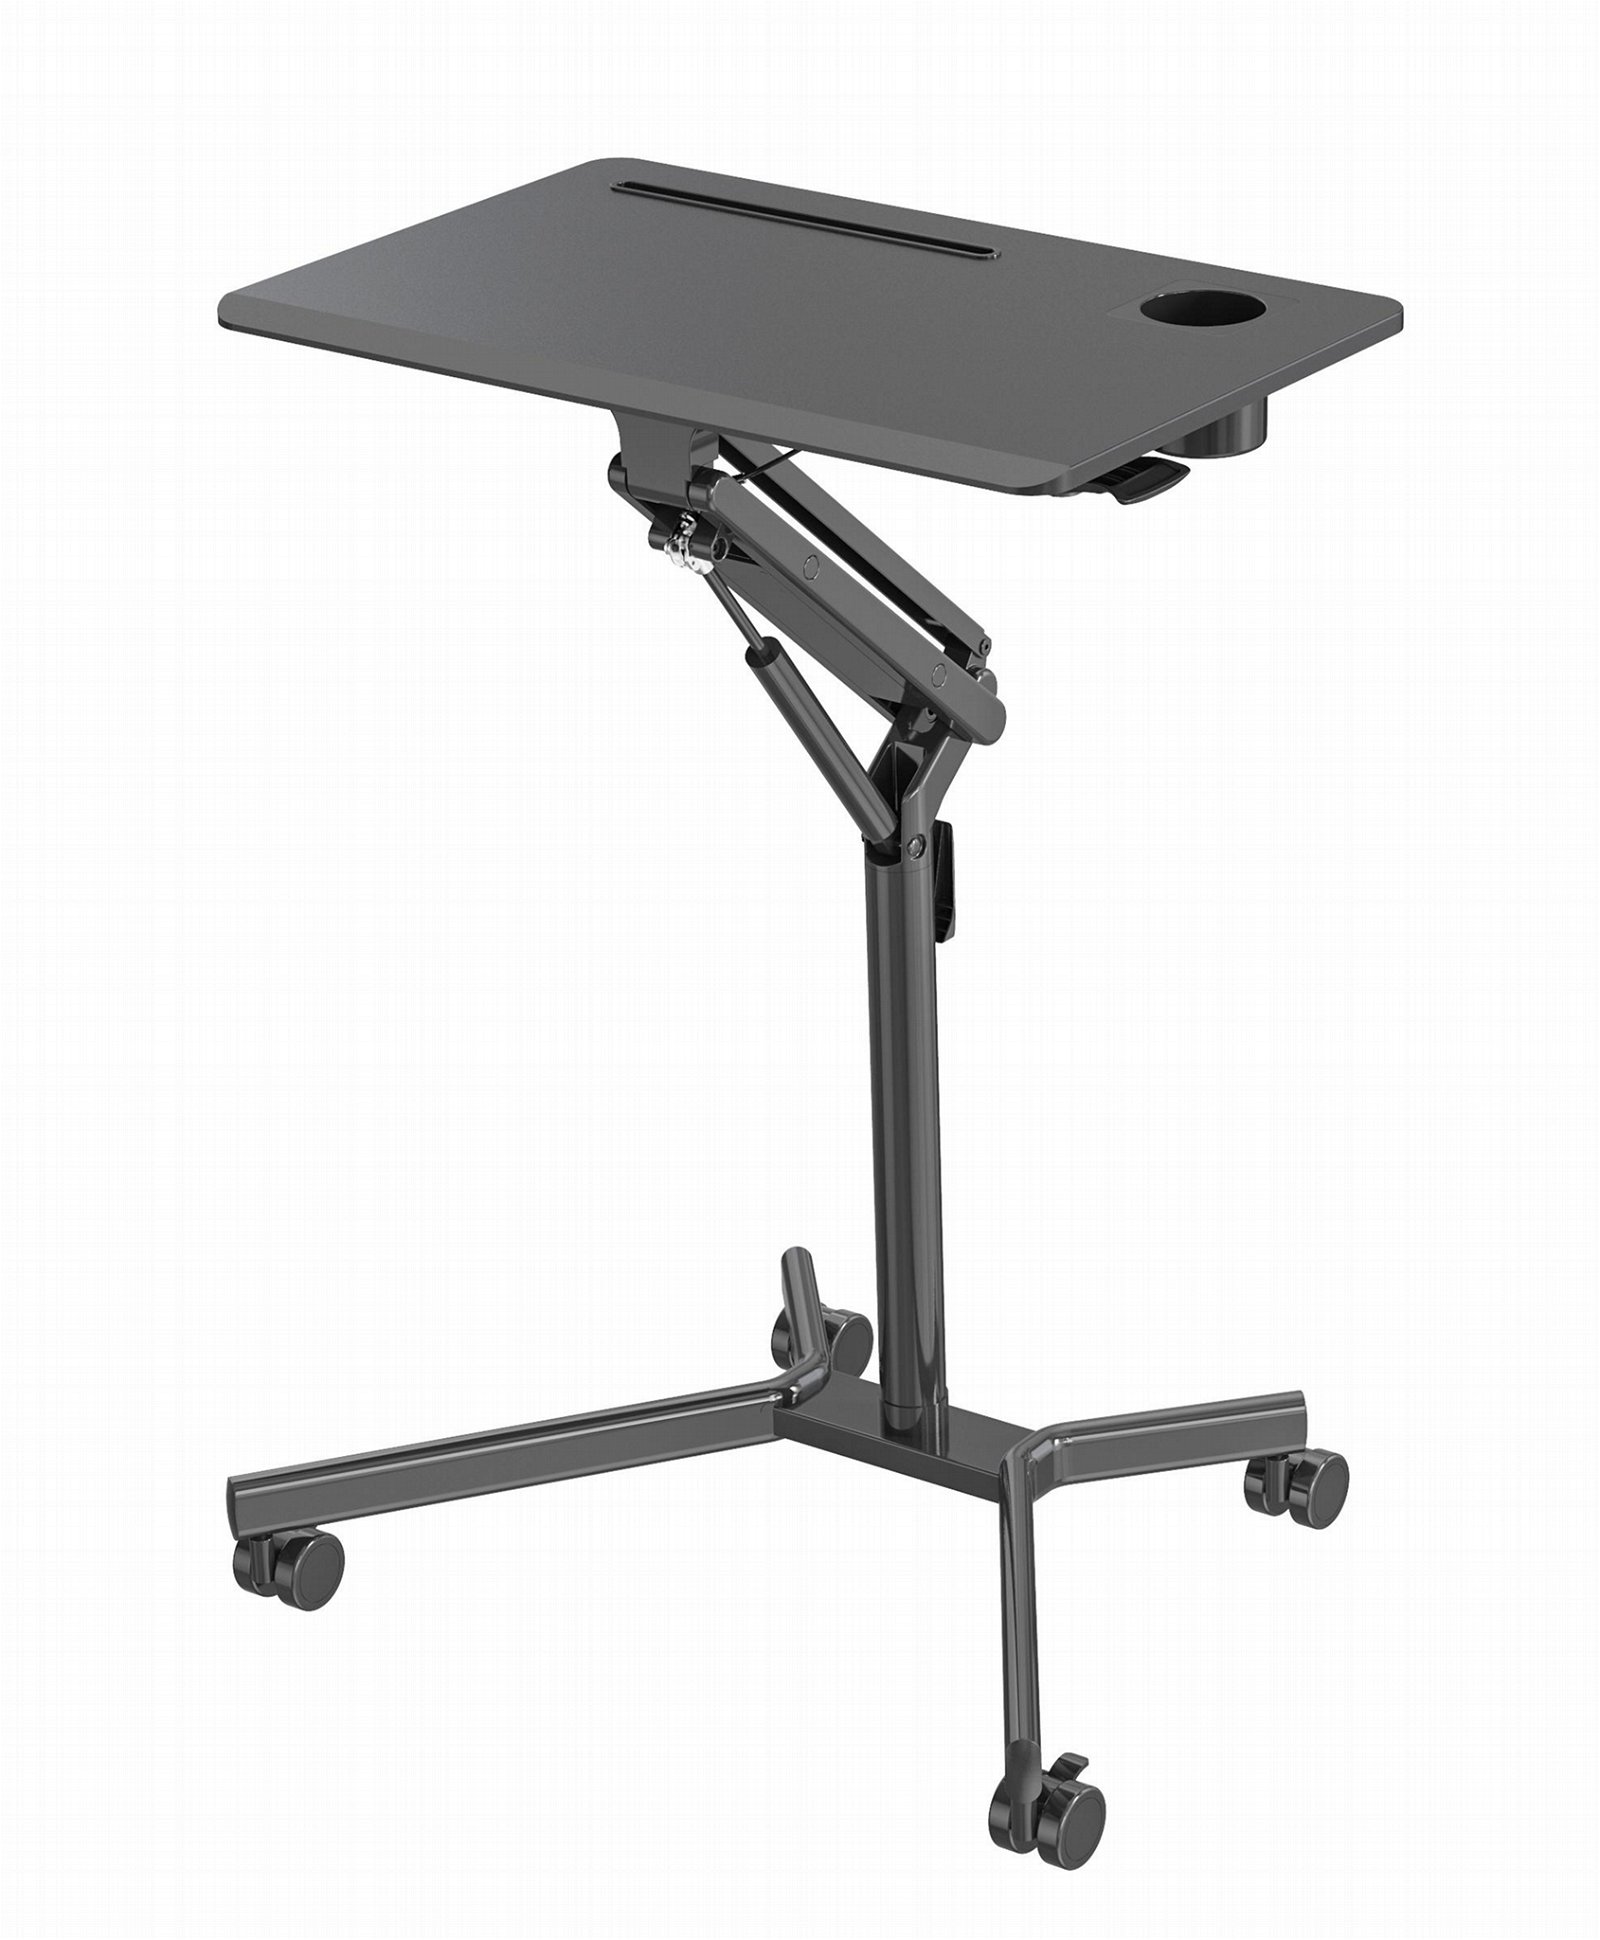 V-Mounts Single Column Height Adjustable Mobile Desk Laptop Desk with Gas Spring